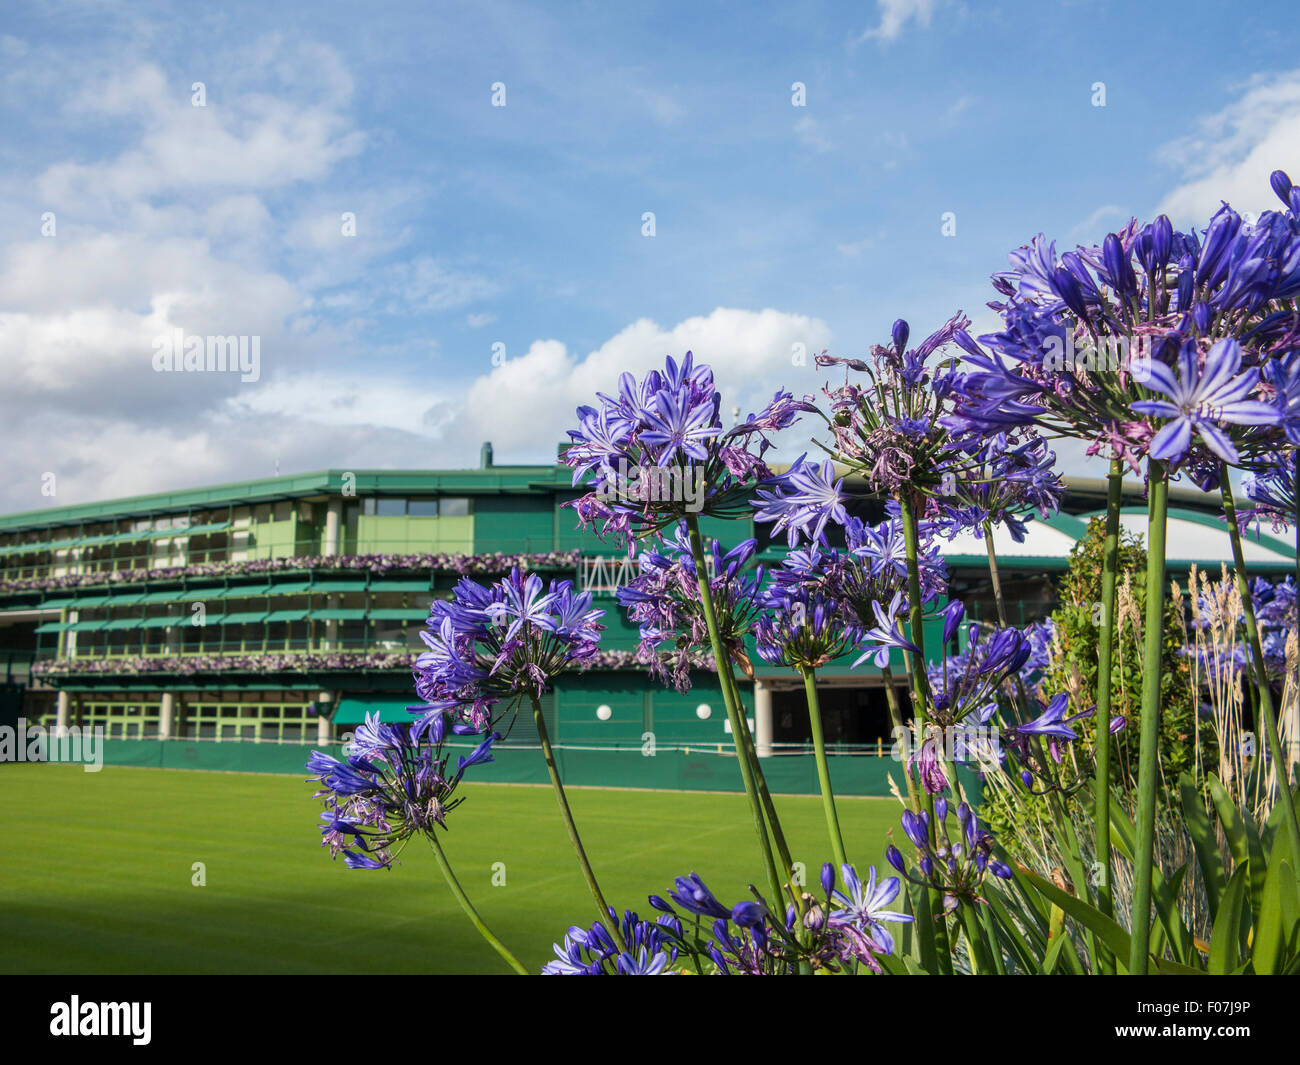 Un numéro de cour et des scènes de l'All England Club de tennis à Wimbledon, en Angleterre, la maison du tennis de Wimbledon Banque D'Images